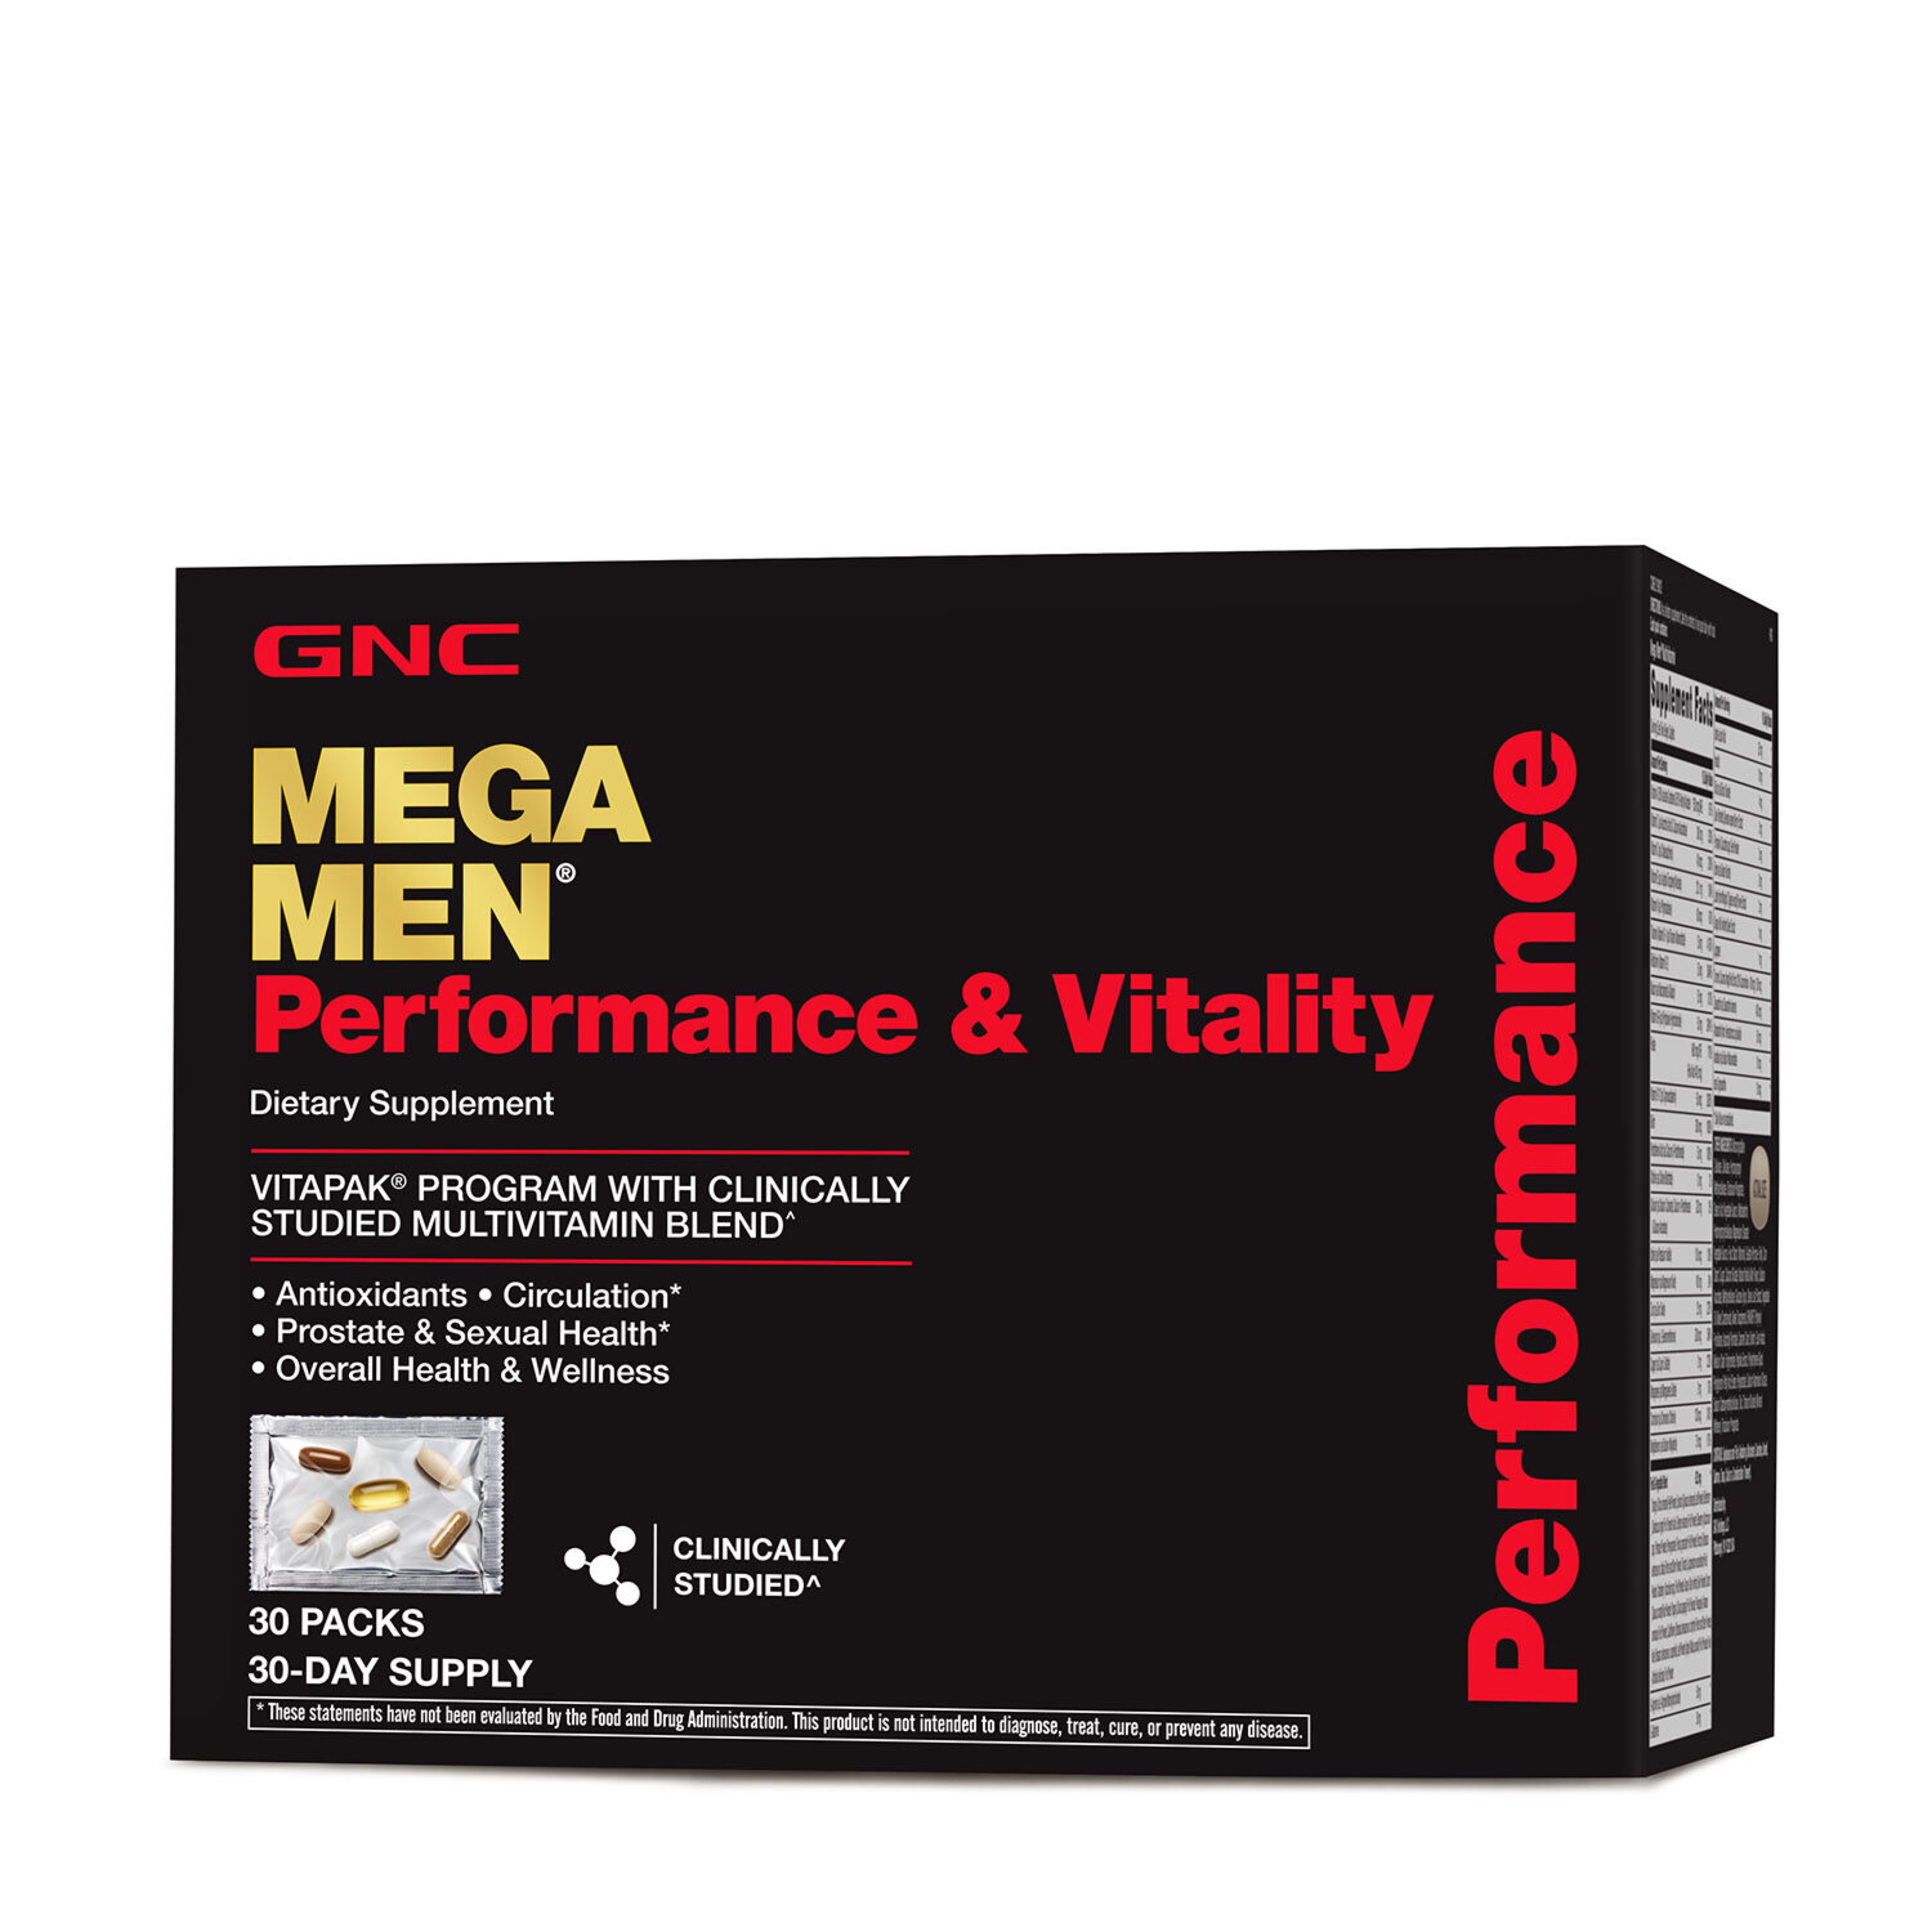 GNC MEGA MEN Performance and Vitality Vitapak Program – 30 Vitapaks